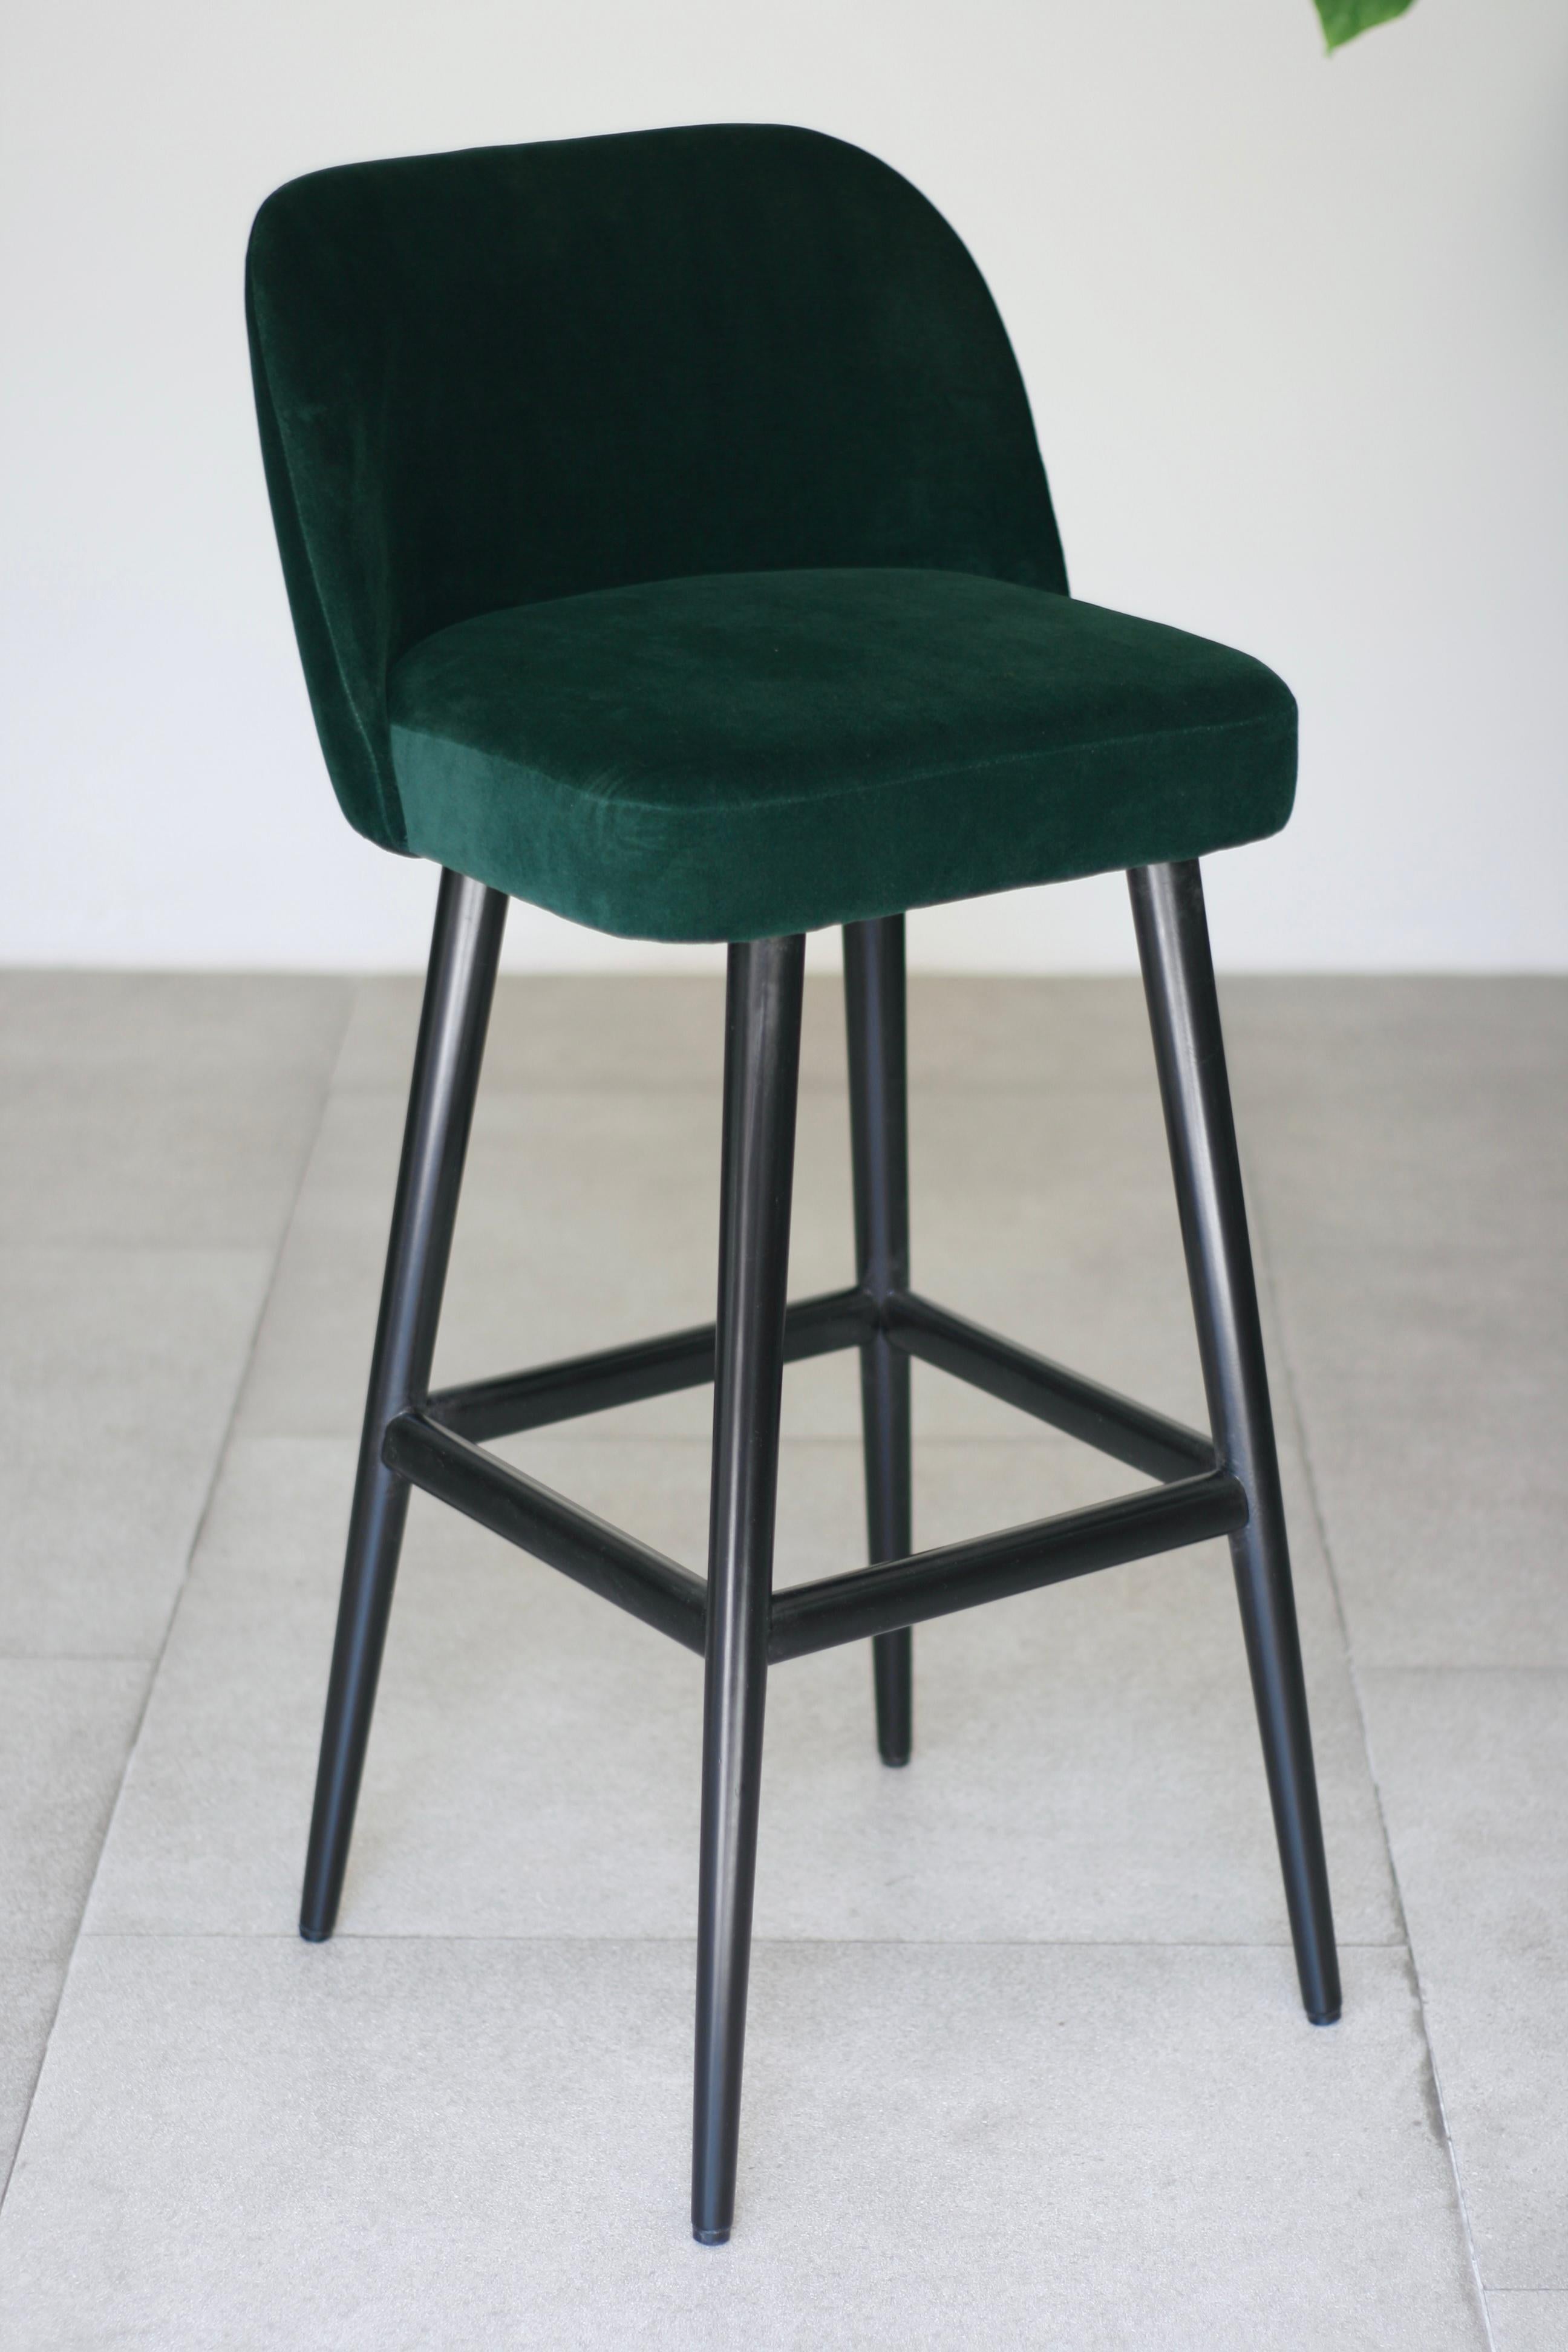 emerald green bar stools